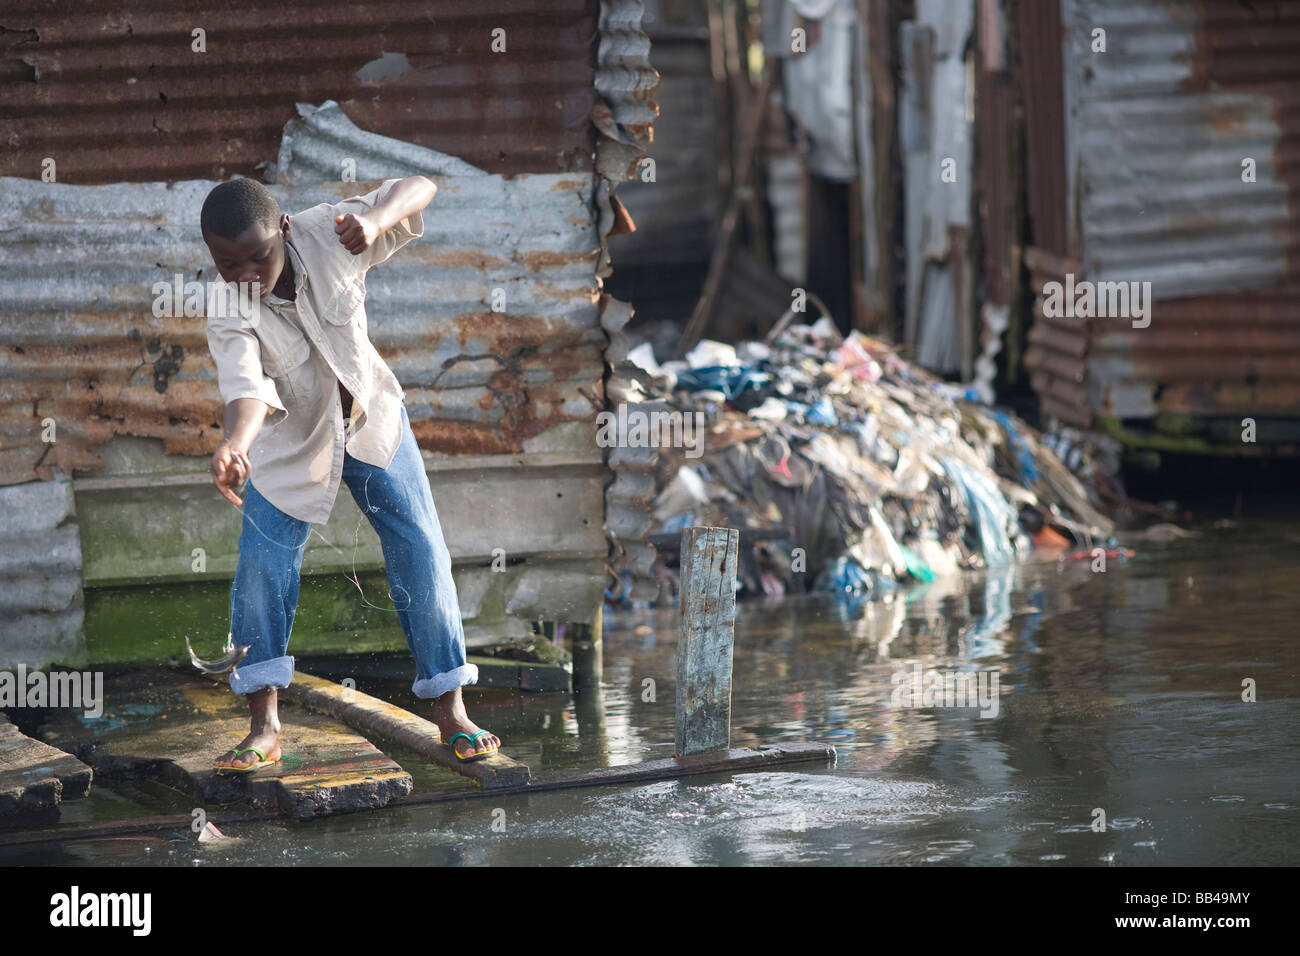 Liberian boy fishing in sewage water in Monrovia, Liberia. Stock Photo